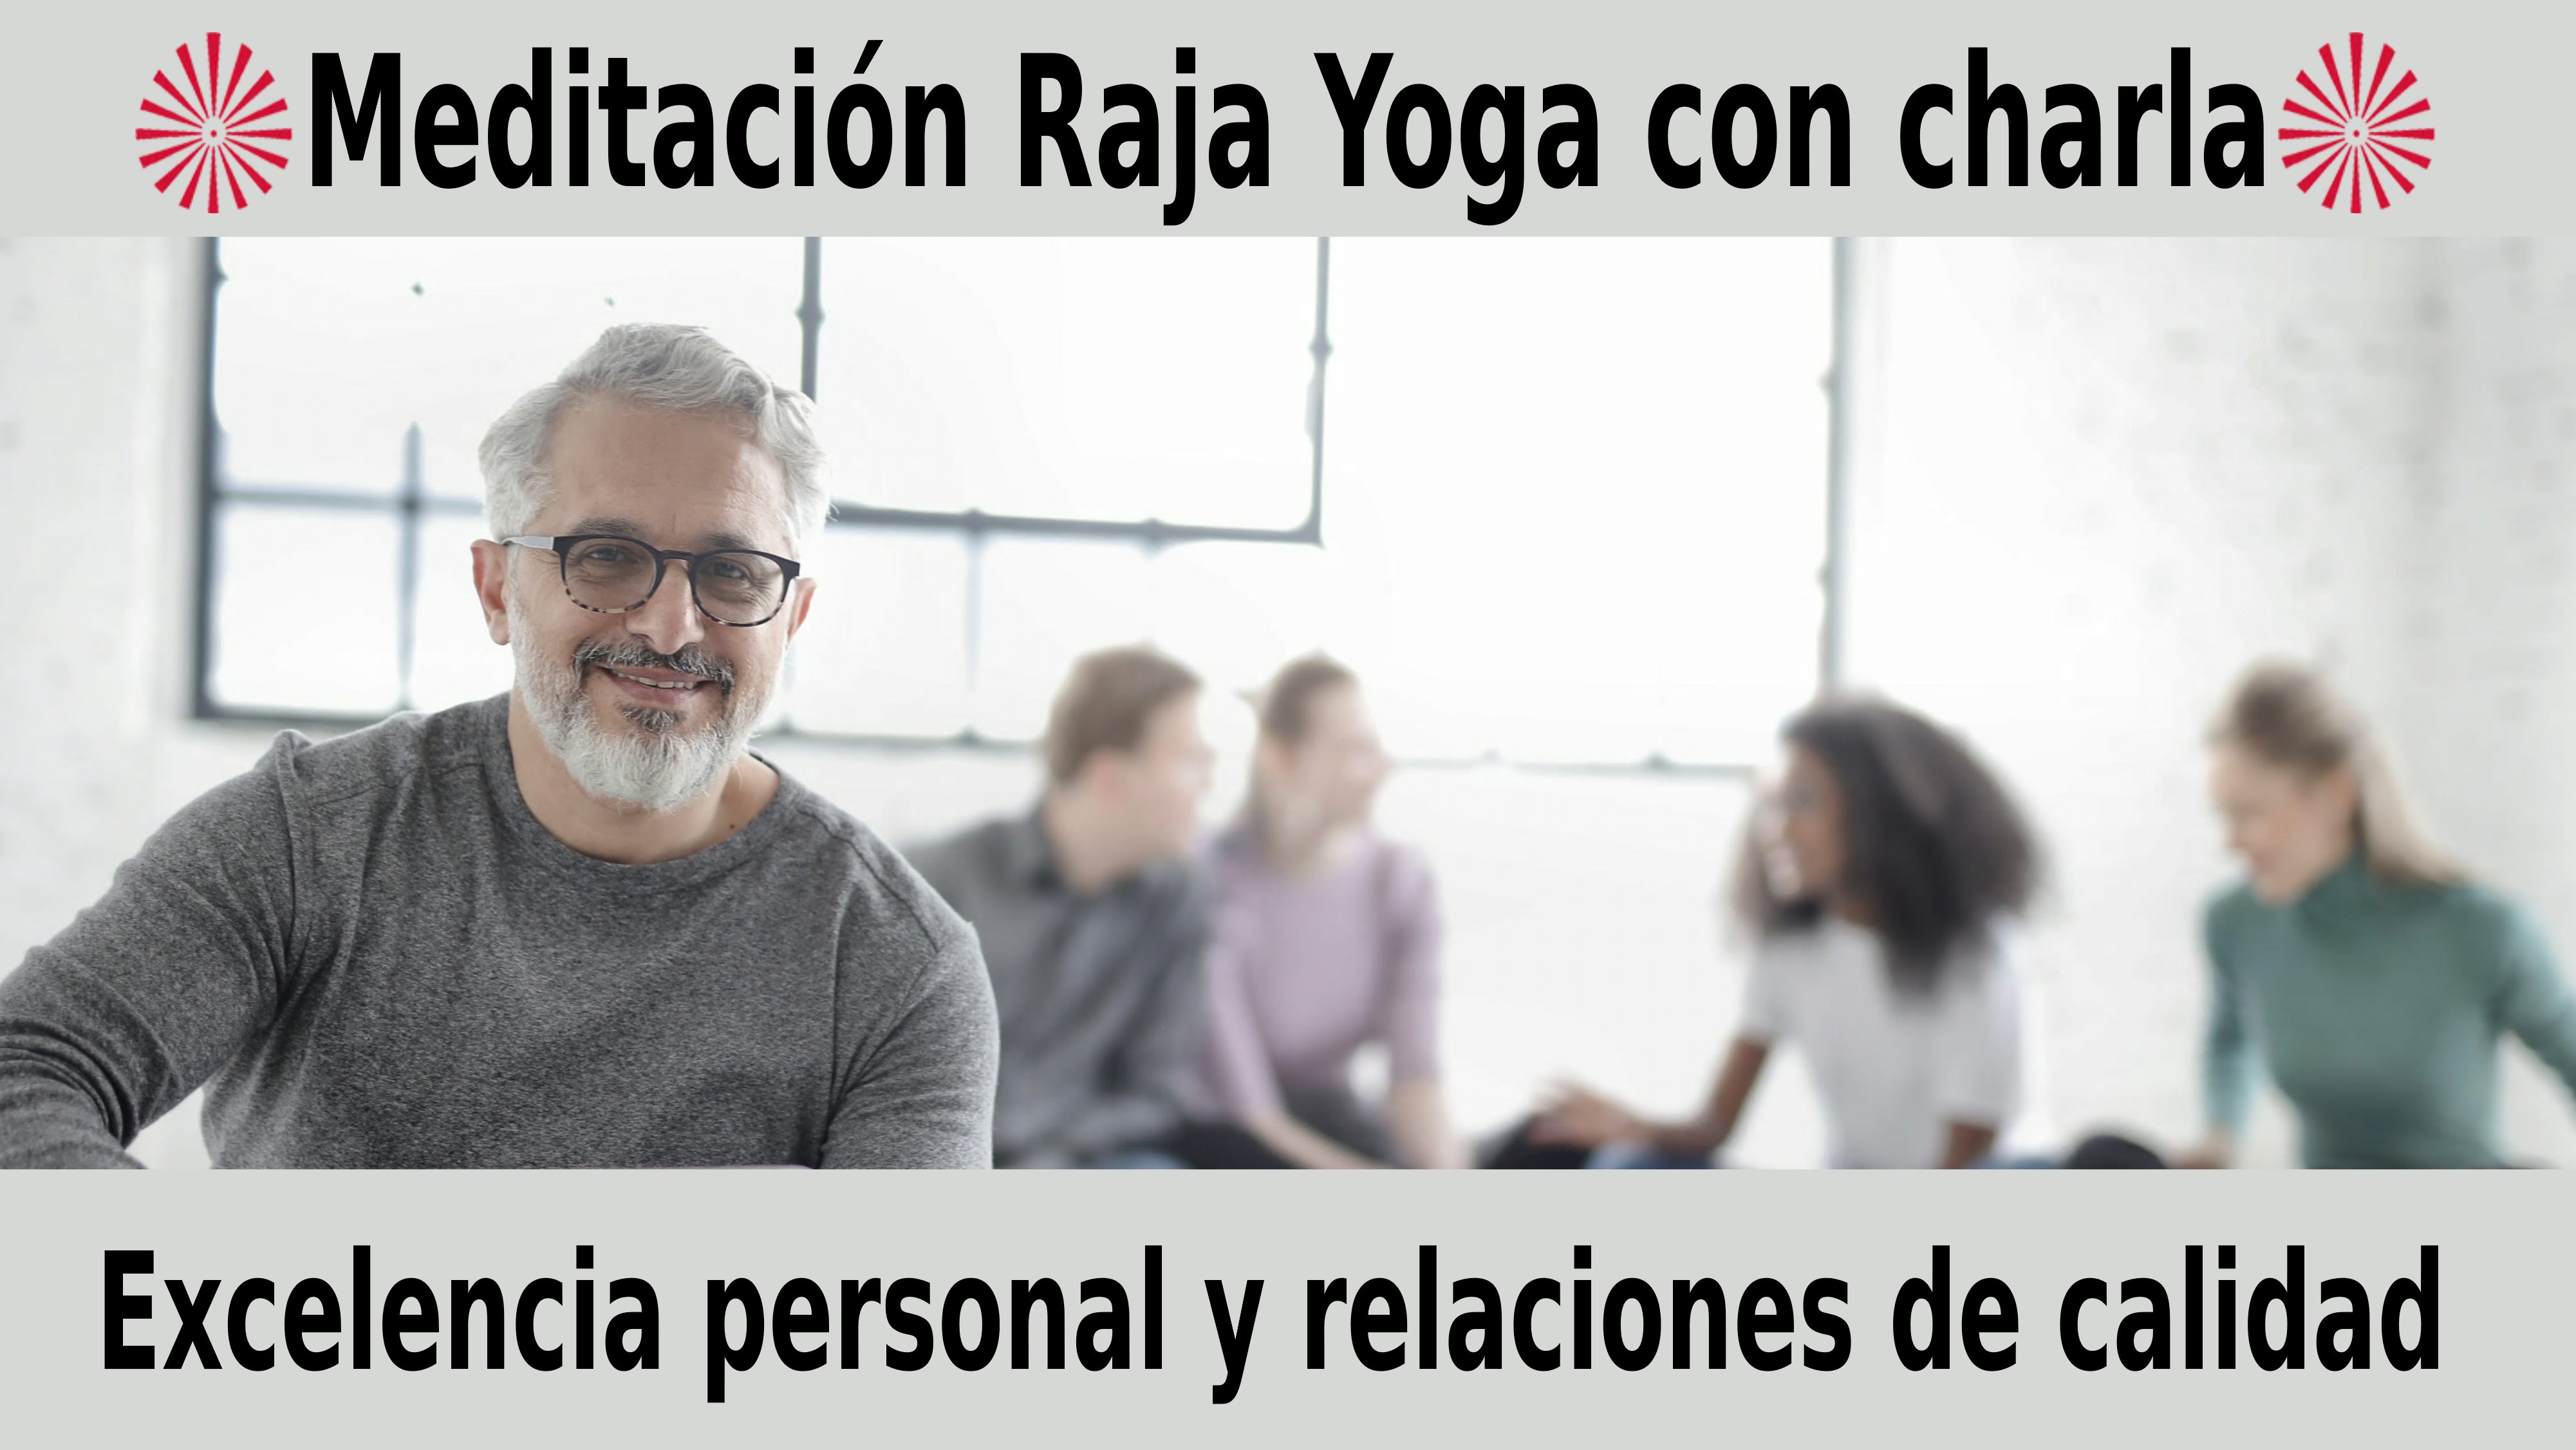 Meditación Raja Yoga con charla: Excelencia personal y relaciones de calidad (9 Noviembre 2020) On-line desde Mallorca